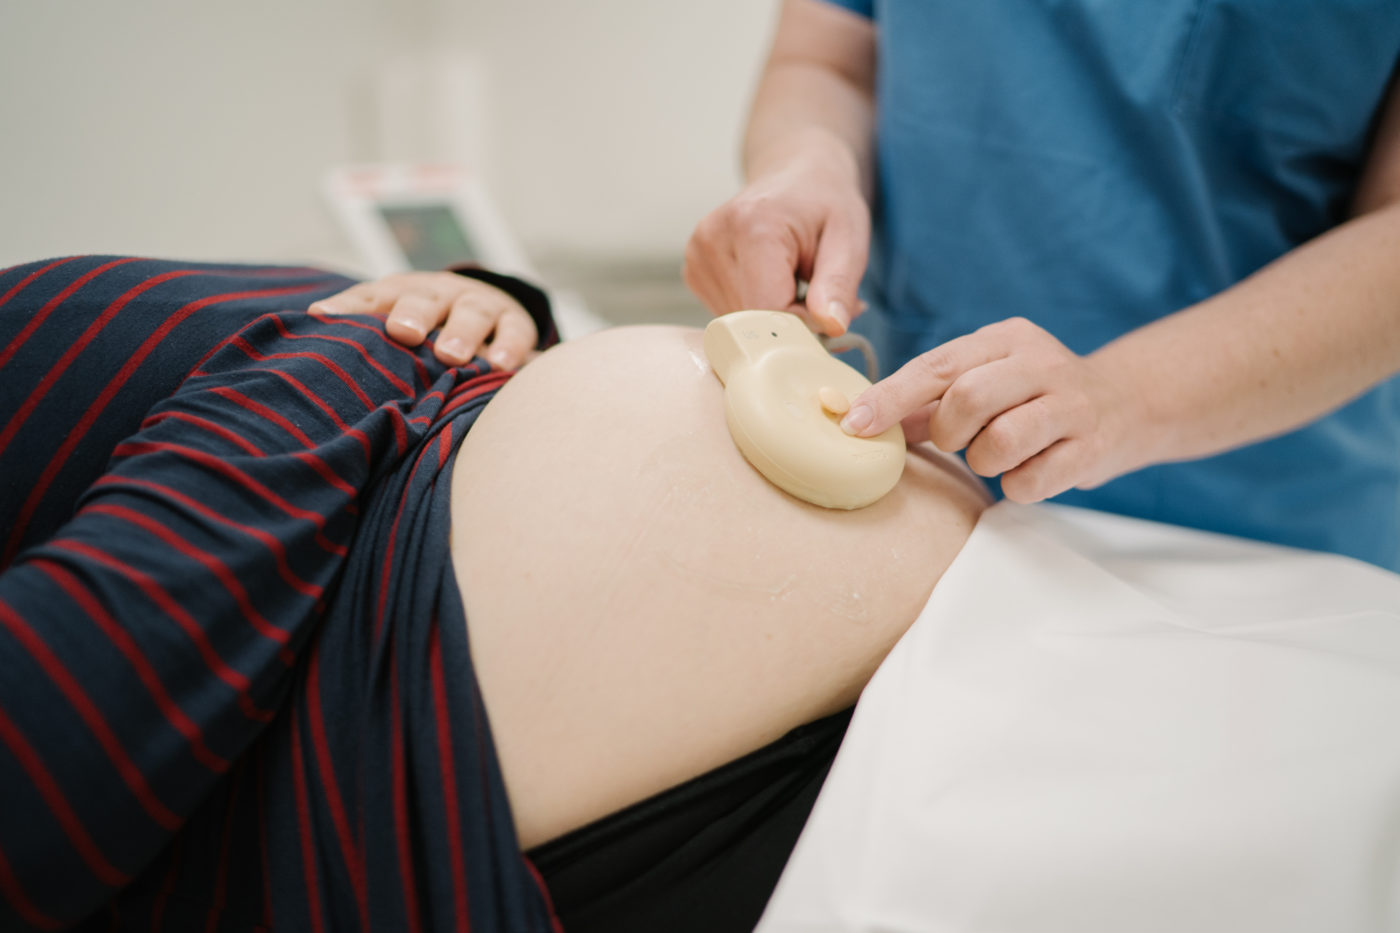 Le monitoring fœtal, un examen utile pendant la grossesse et l